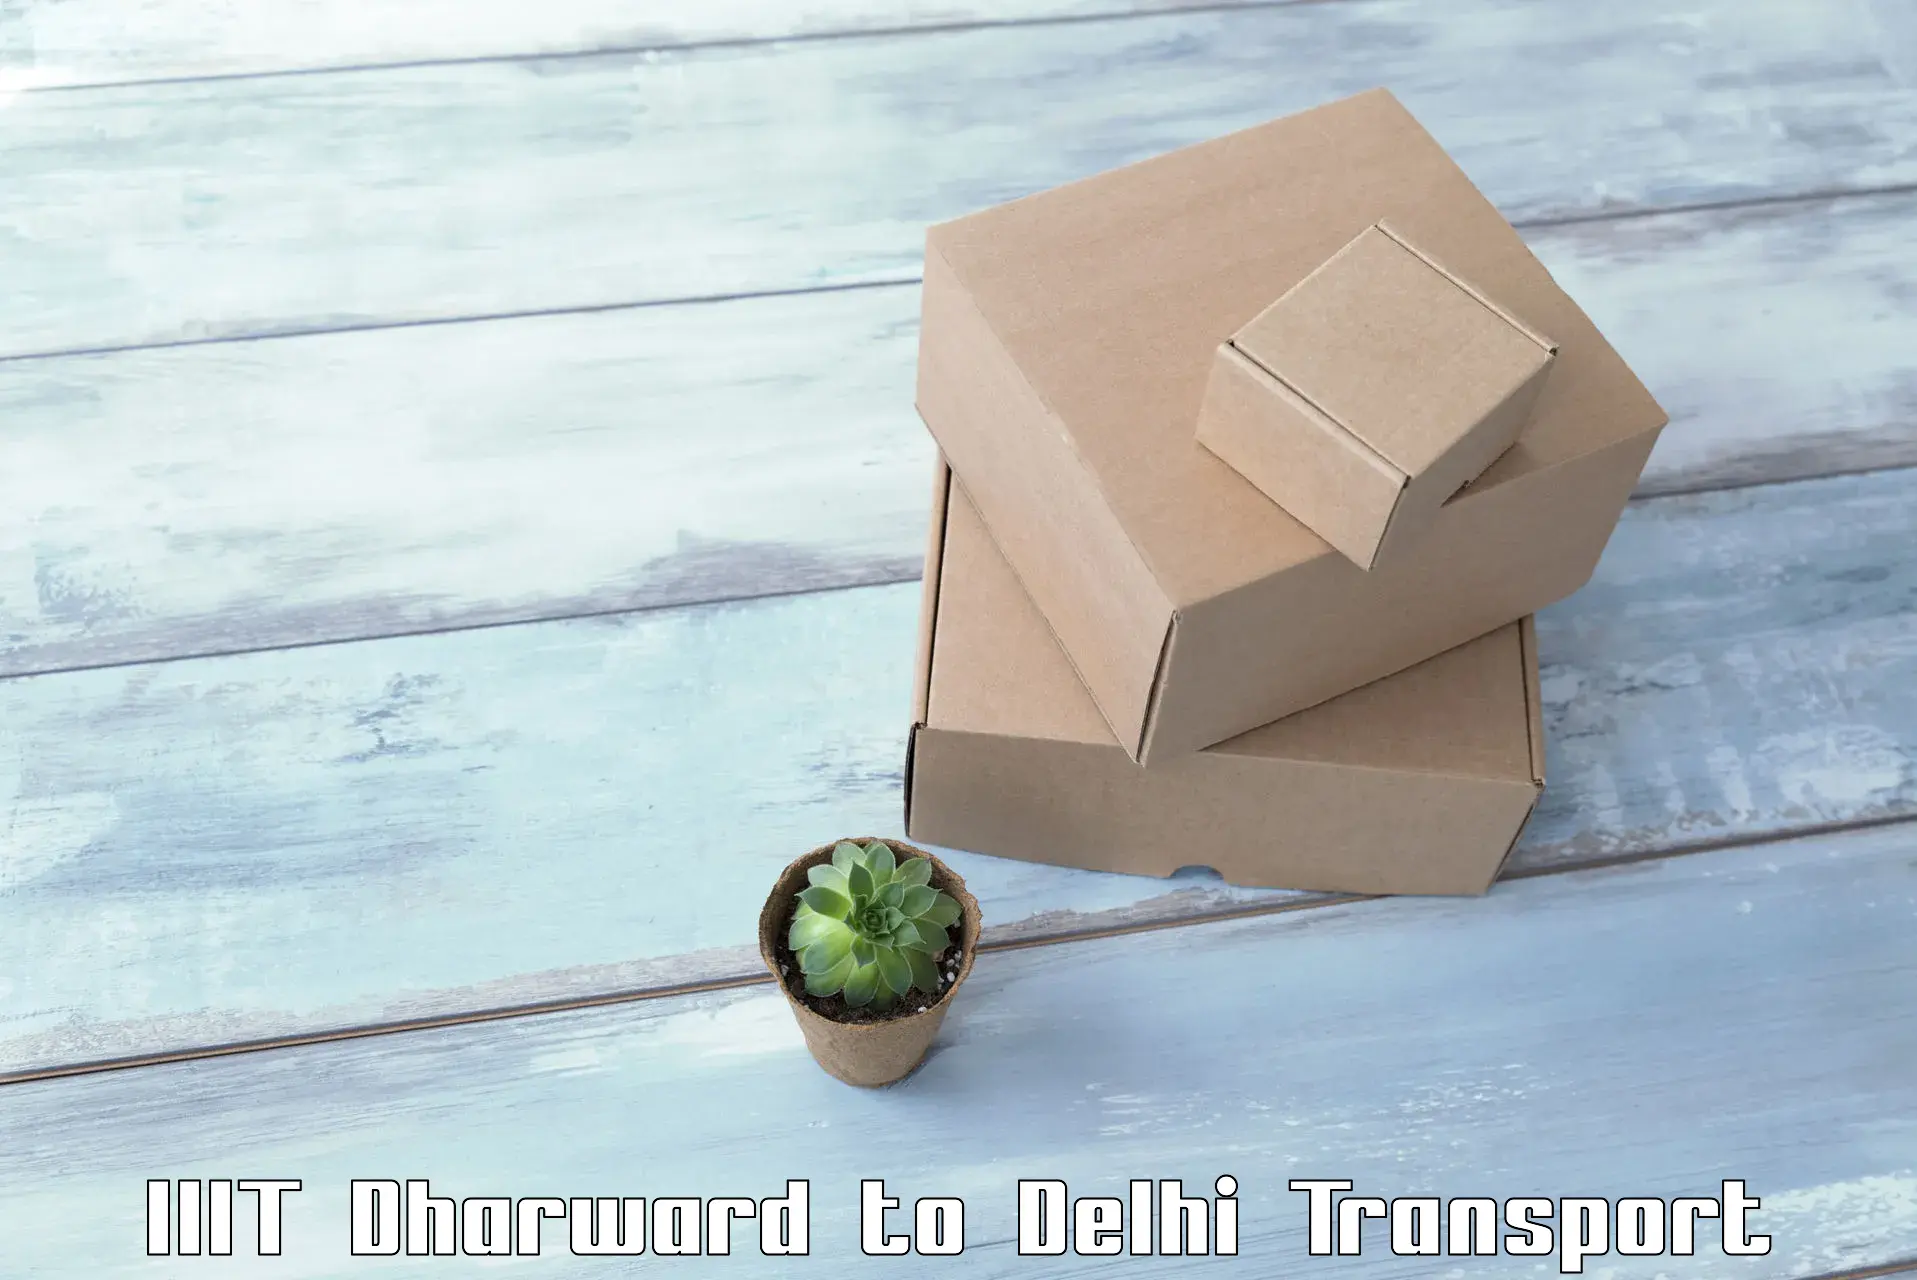 Online transport booking IIIT Dharward to Sarojini Nagar